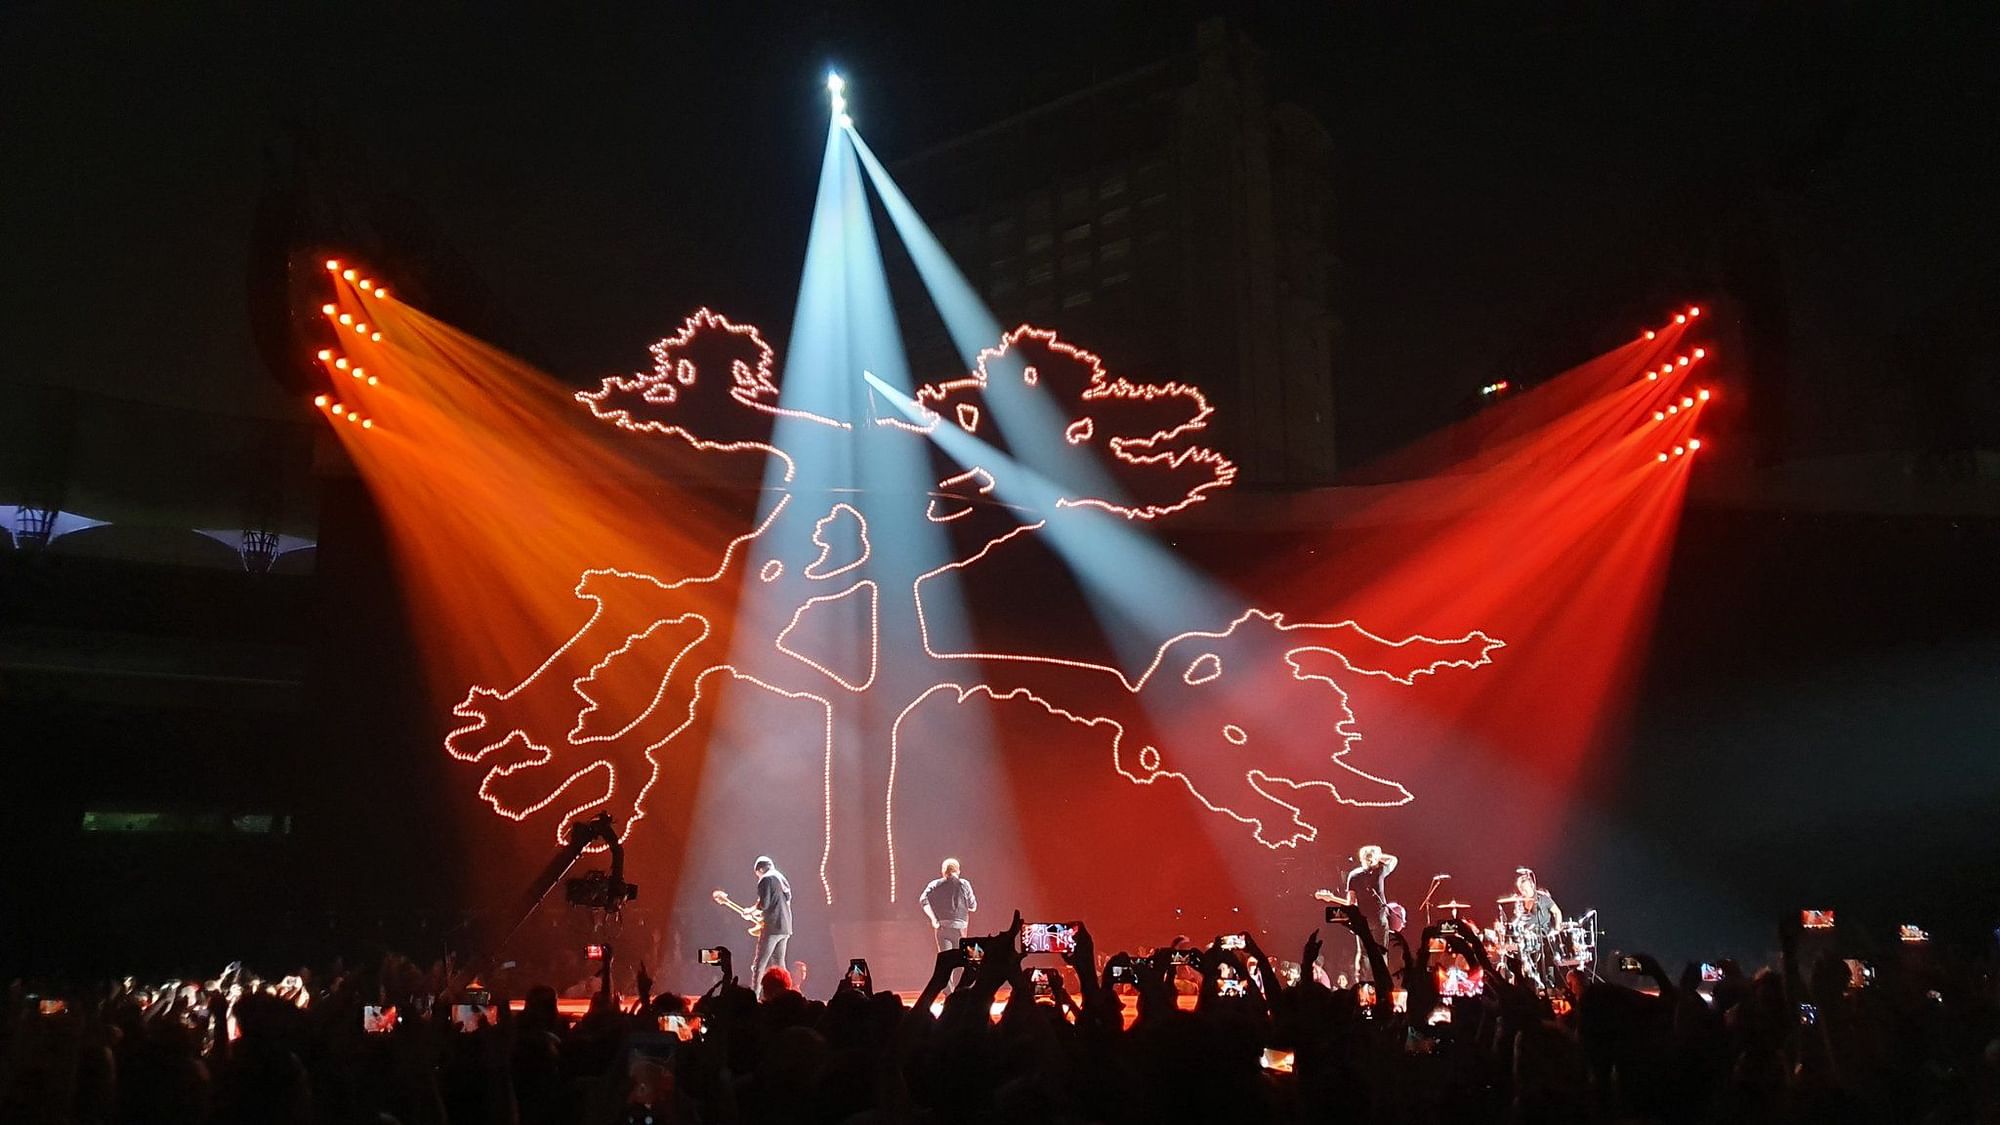 The U2 concert in Mumbai.